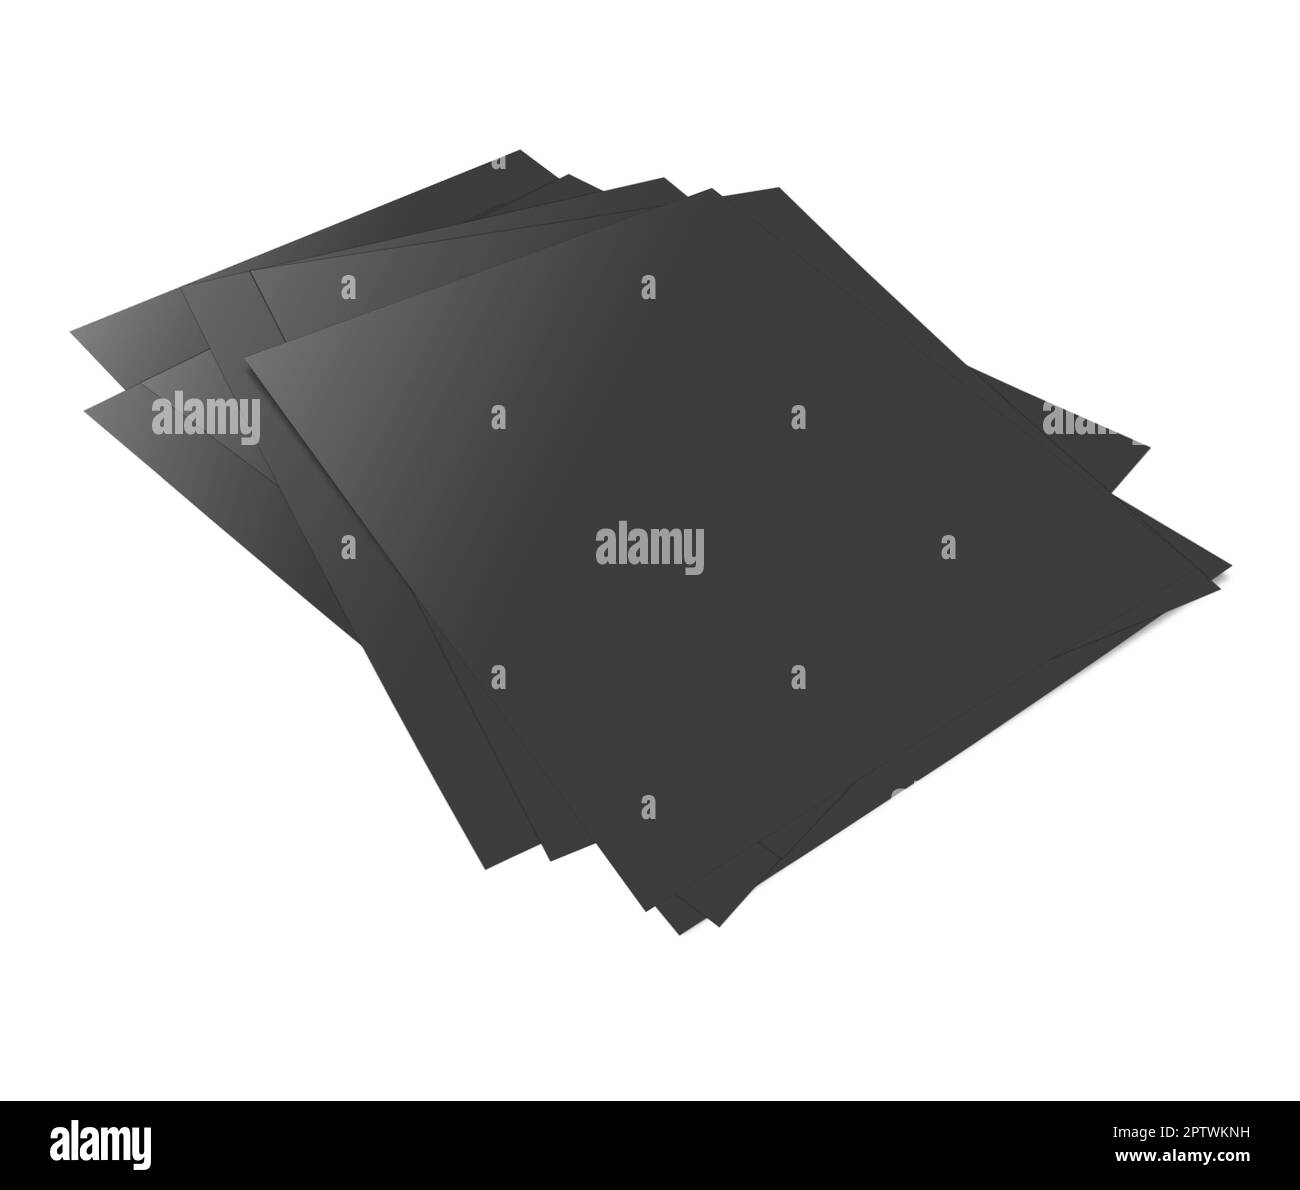 Modèle vierge de rapports noirs pour les présentations et la conception. 3D rendu. Image générée numériquement. Isolé sur fond blanc. Banque D'Images